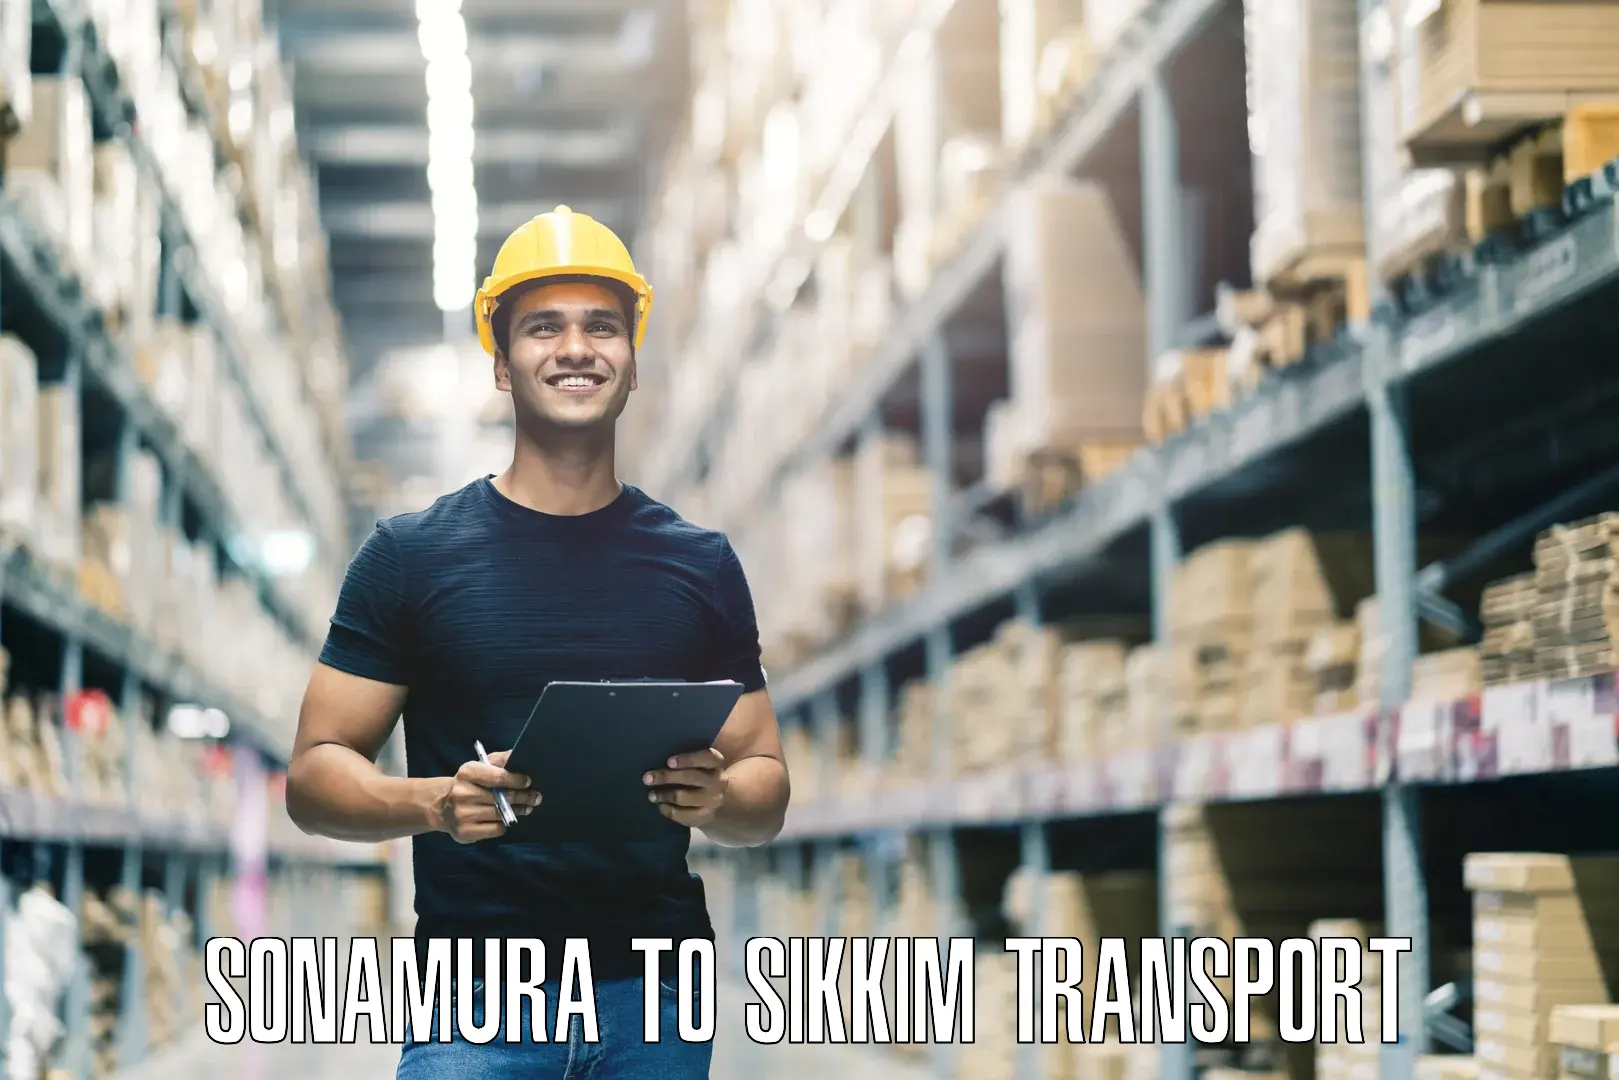 Transport in sharing Sonamura to Ranipool